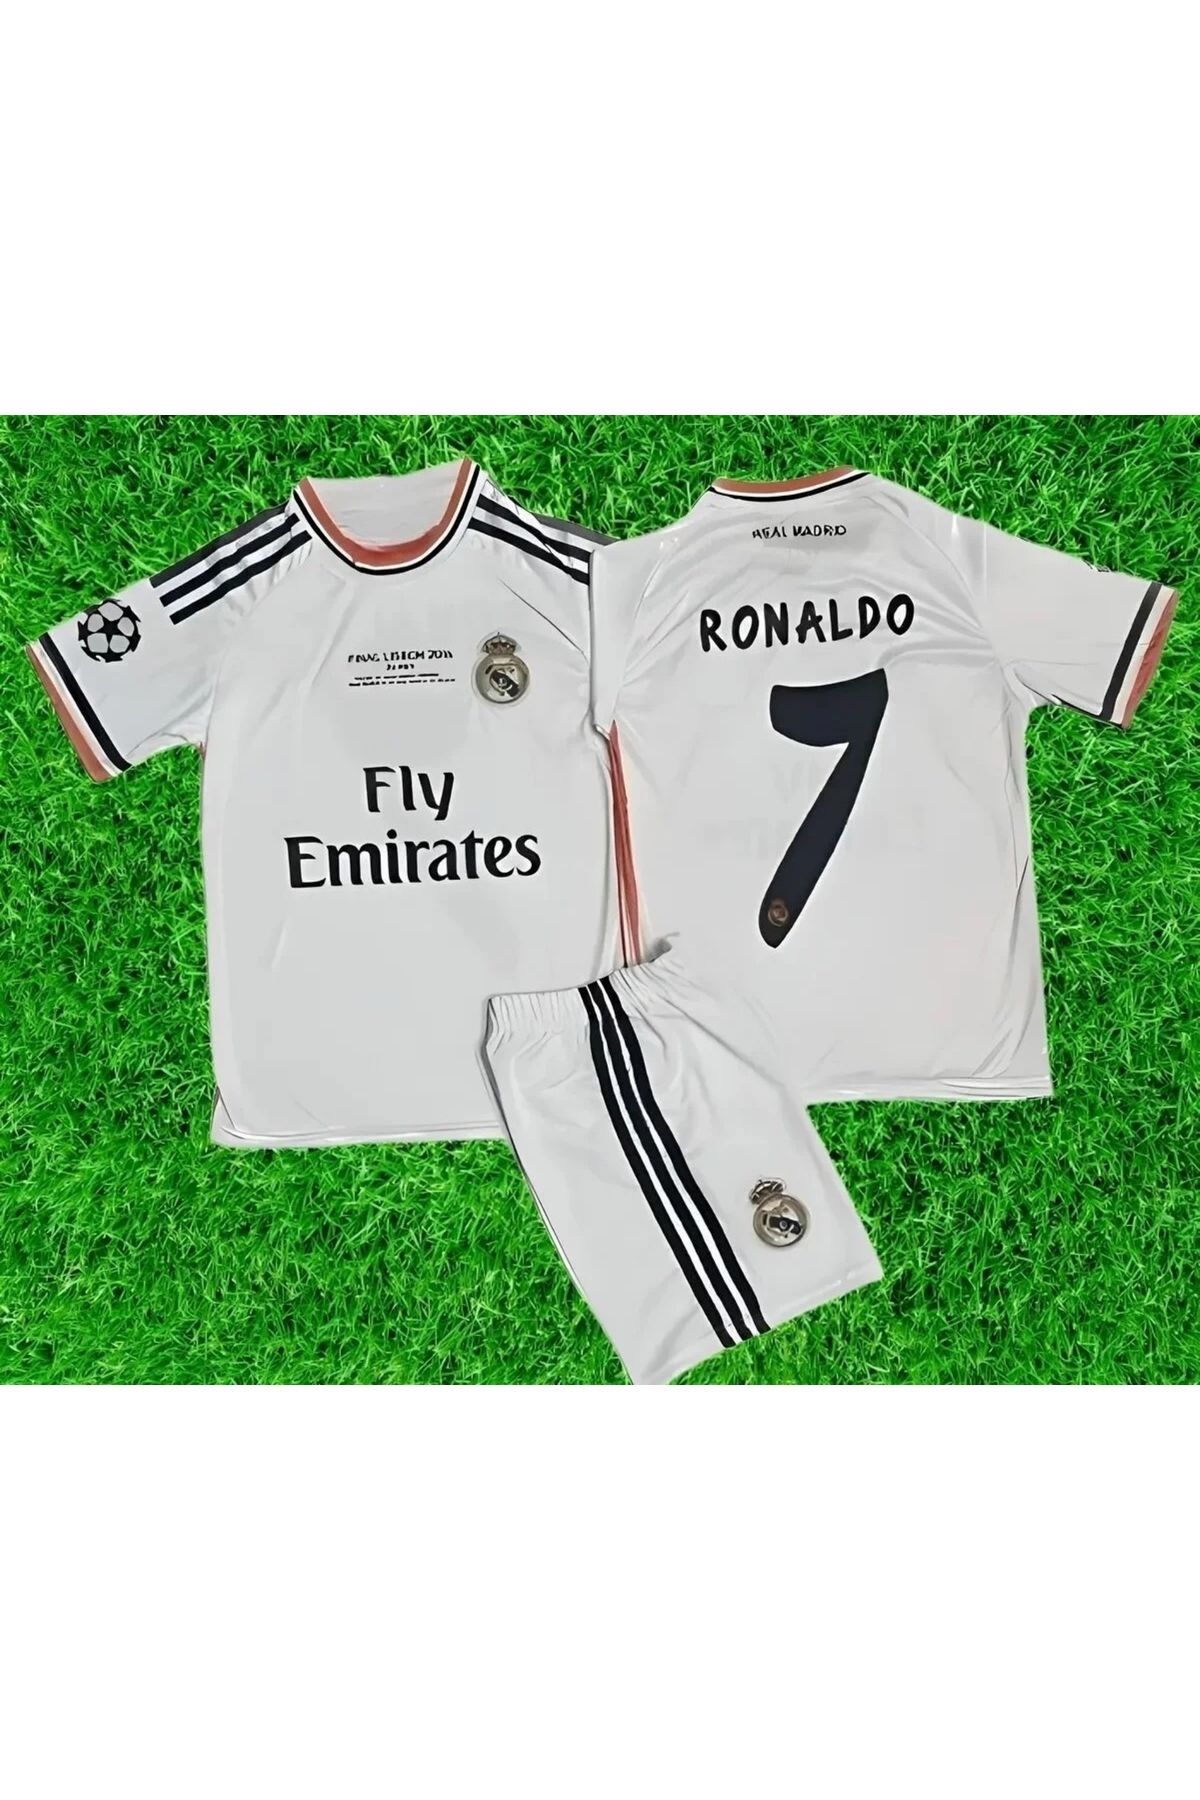 yenteks Real Madrid Ronaldo Final Lisbon 2014 Çoçuk Forması Bileklik Çorap Hediye 4'li Set Tt1